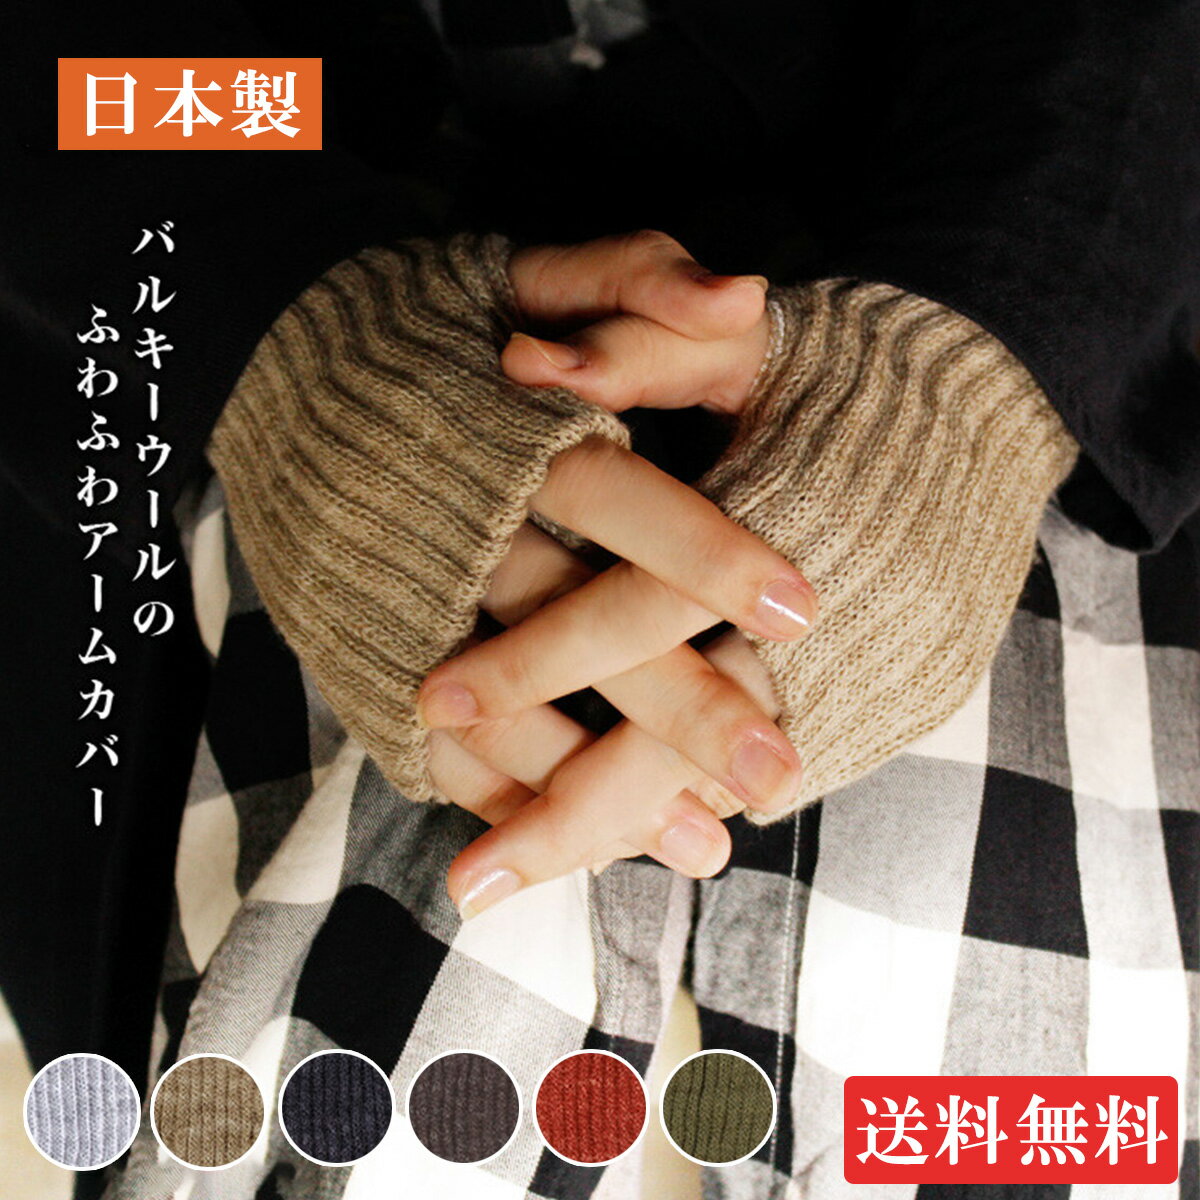 【送料無料】アームカバー 日本製 バルキーウール シルク ウール 指穴あり あたたか ふわふわ 二重編み フリーサイズ 保湿 吸湿 通気性 メール便